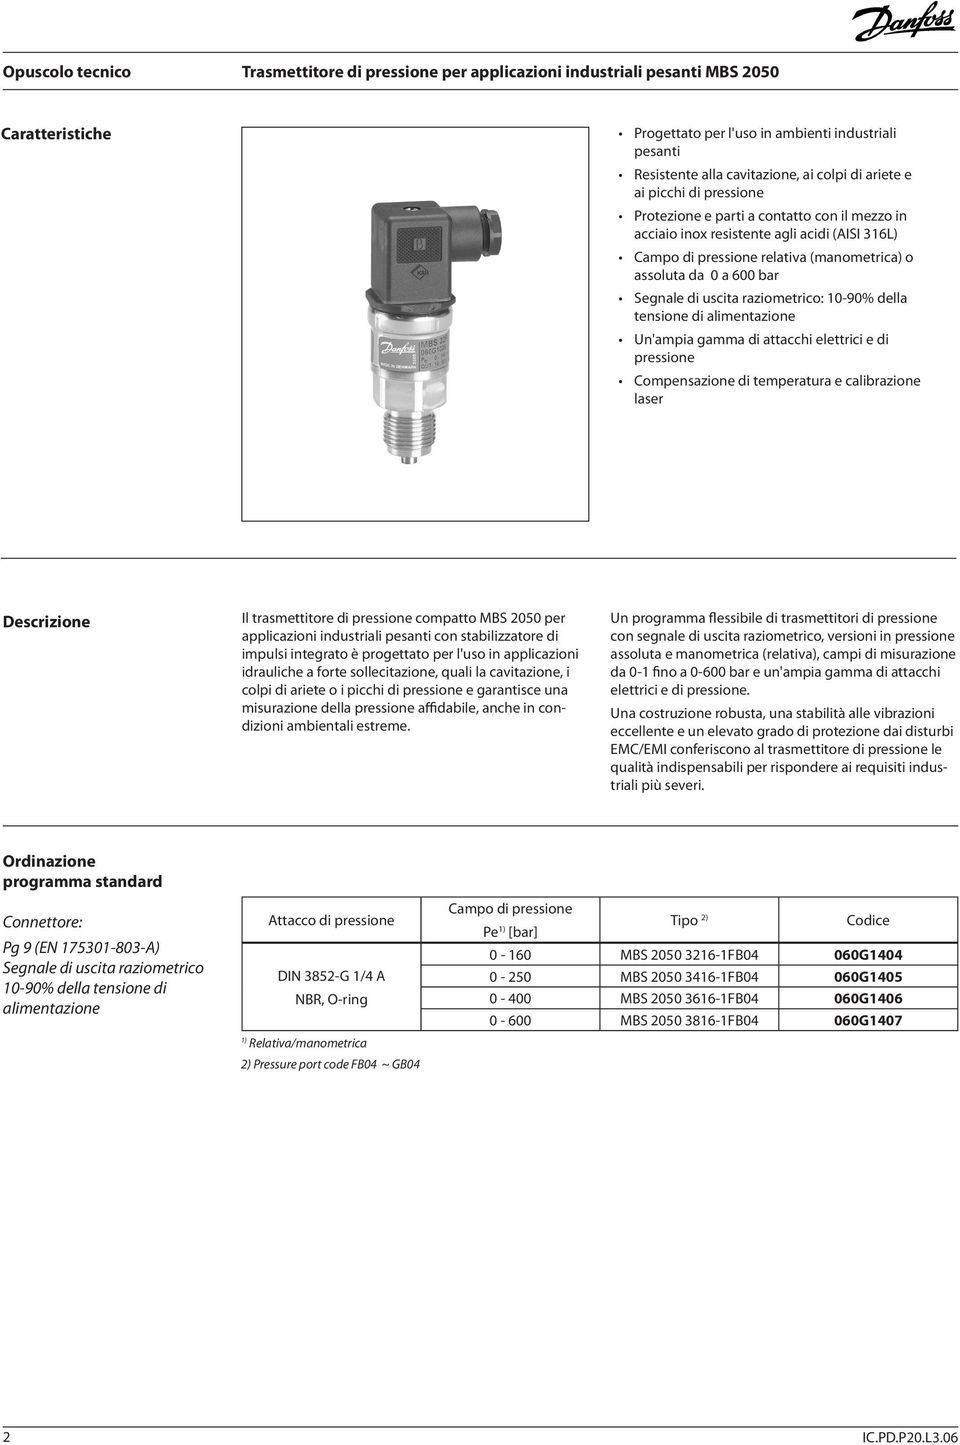 attacchi elettrici e di pressione Compensazione di temperatura e calibrazione laser Descrizione Il trasmettitore di pressione compatto MBS 2050 per applicazioni industriali pesanti con stabilizzatore